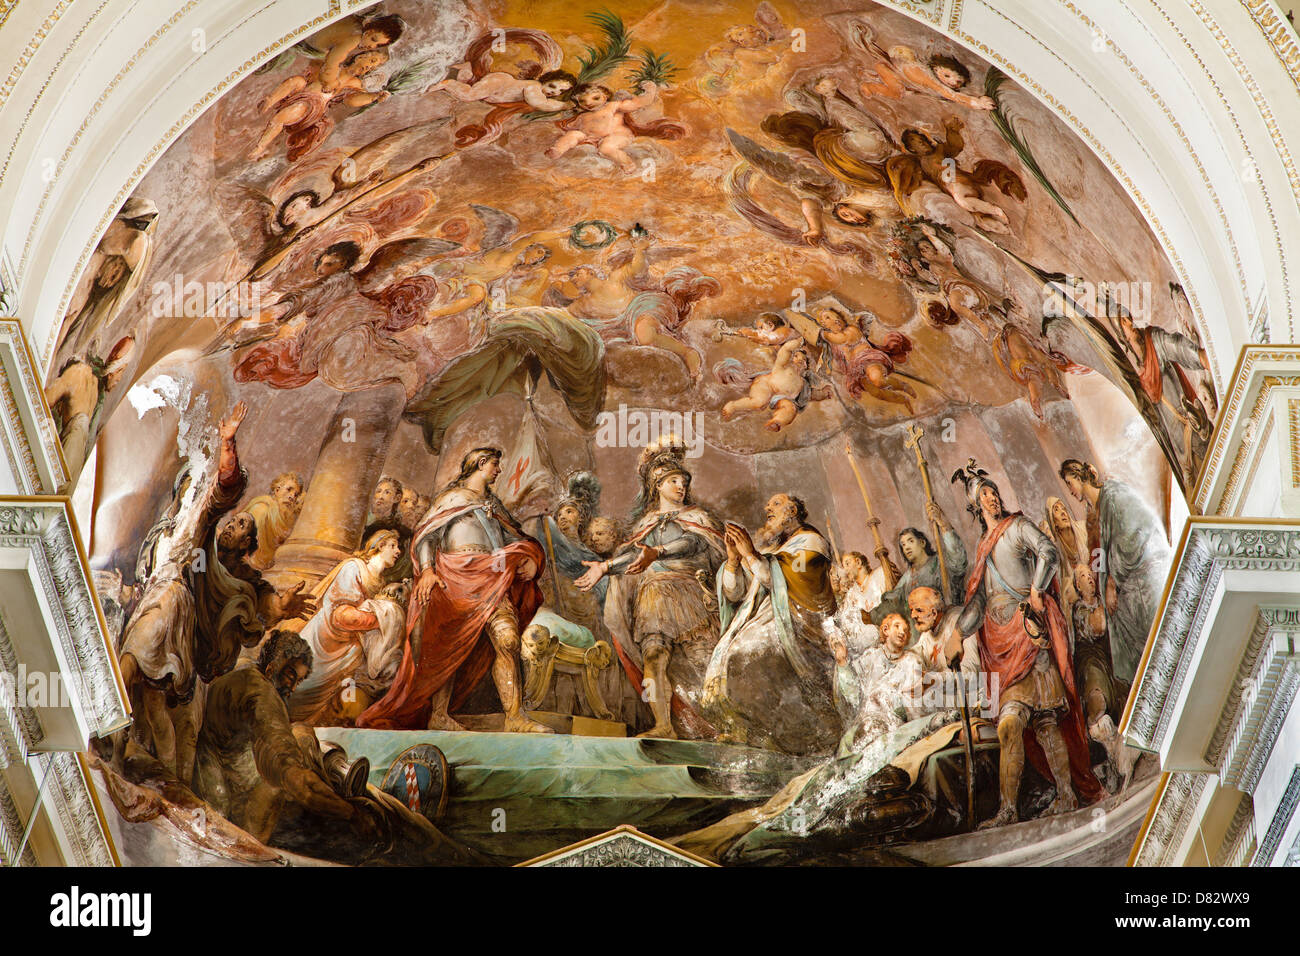 PALERMO - Aprile 8: affresco da abside principale della cattedrale o Duomo Foto Stock